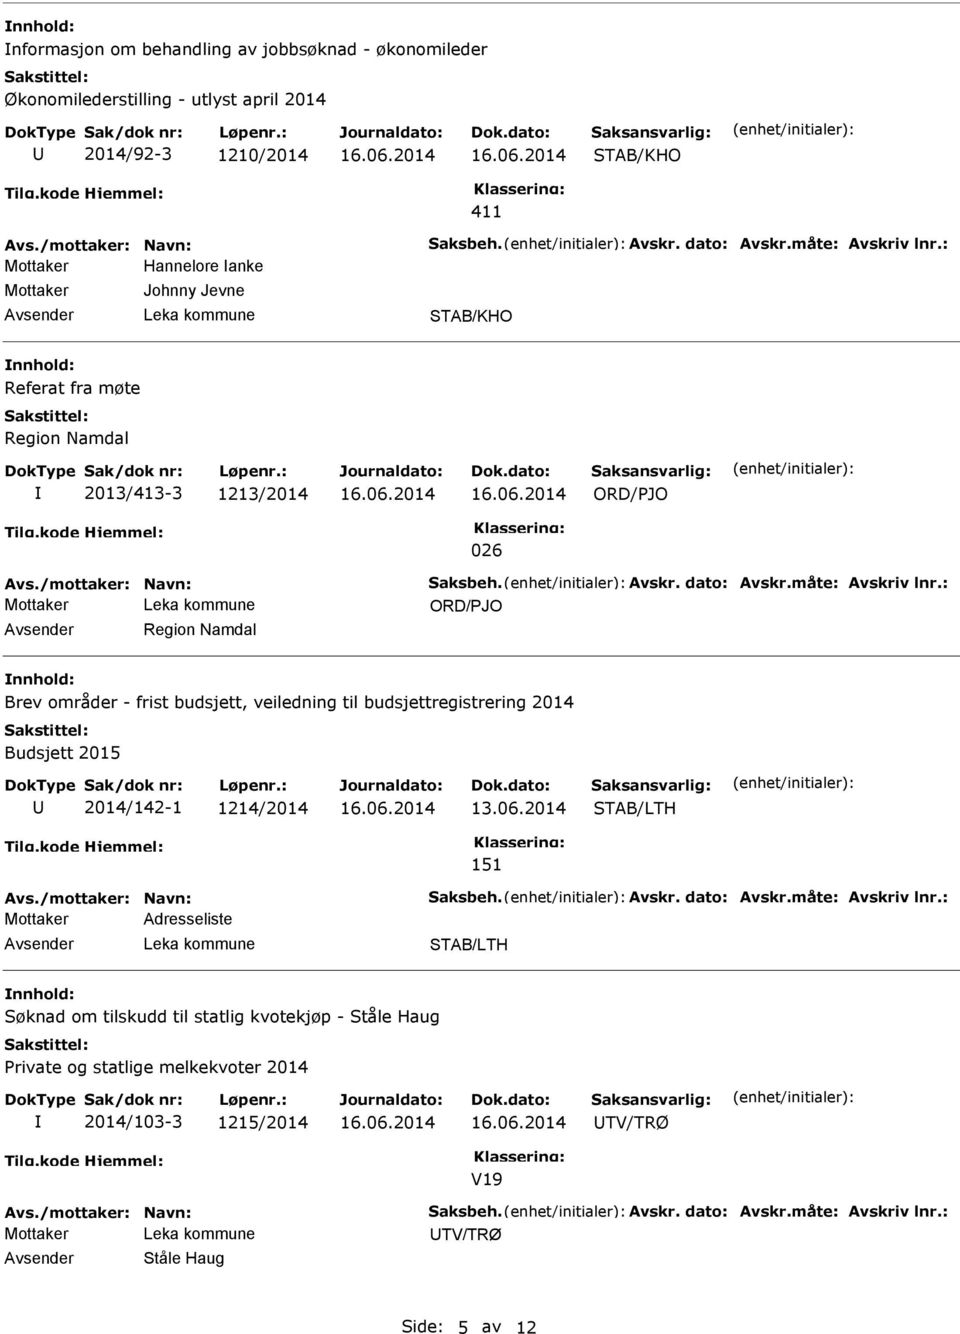 : Region Namdal Brev områder - frist budsjett, veiledning til budsjettregistrering 2014 Budsjett 2015 2014/142-1 1214/2014 151 Avs./mottaker: Navn: Saksbeh. Avskr. dato: Avskr.